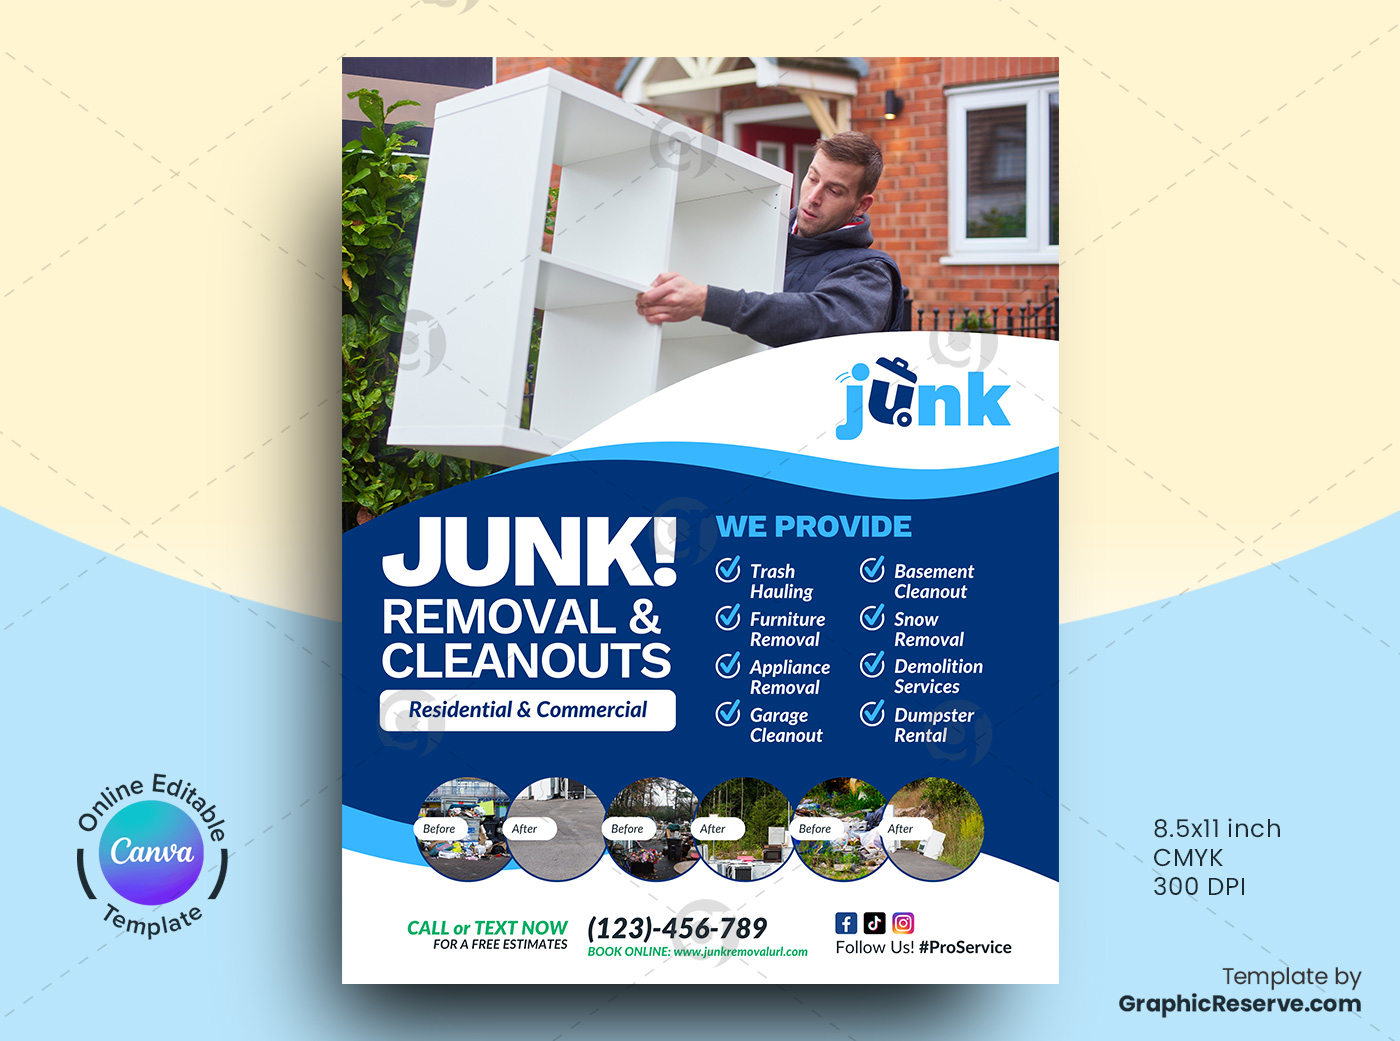 junk cleanout service